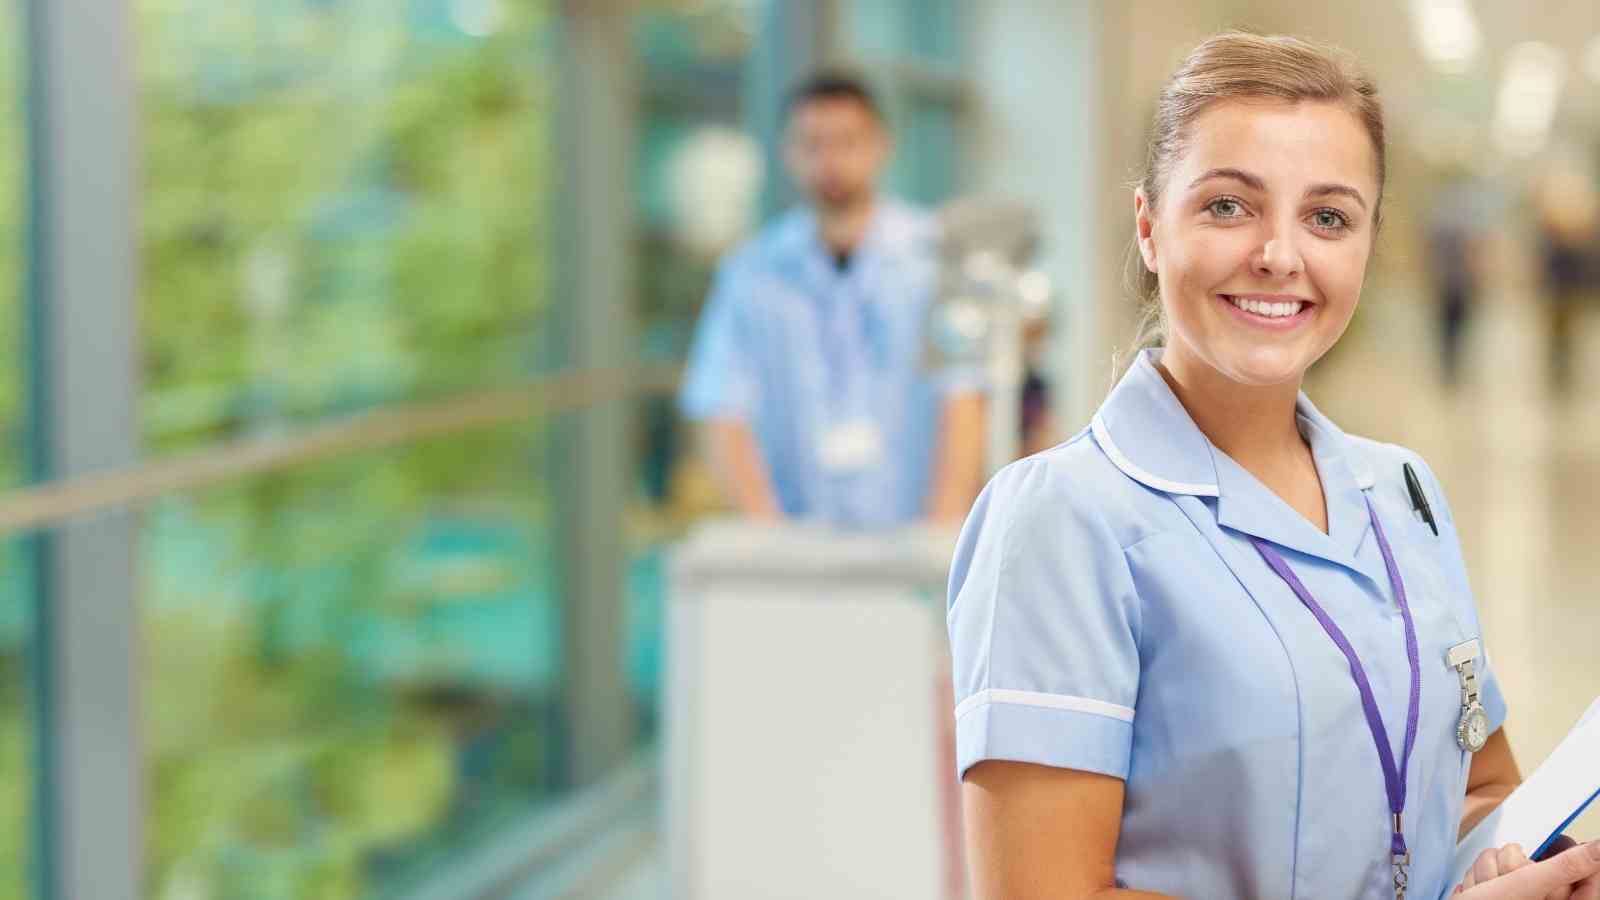 Choosing Nursing As A Career